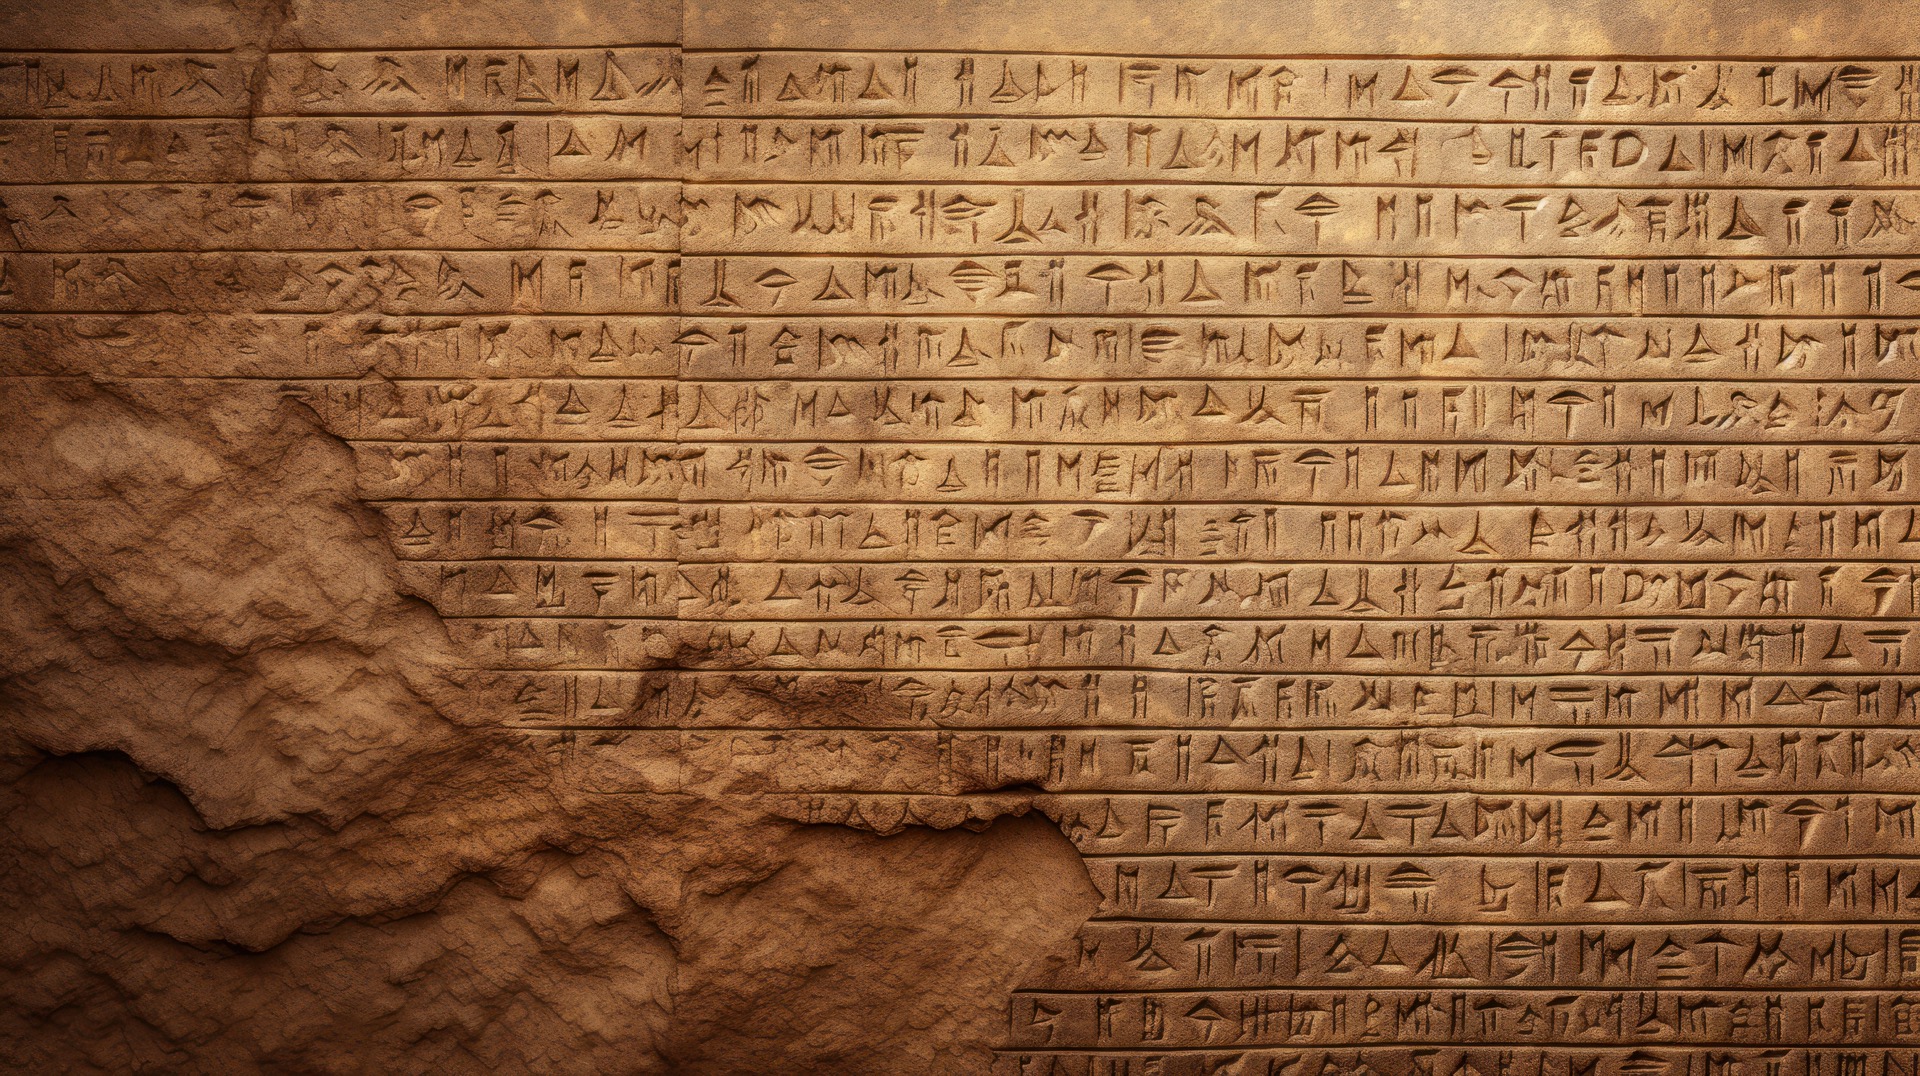 Des écritures retrouvées sur des briques mésopotamiennes ont permis de dater précisément une période de forte intensité du champ magnétique terrestre. © scaliger, Adobe Stock